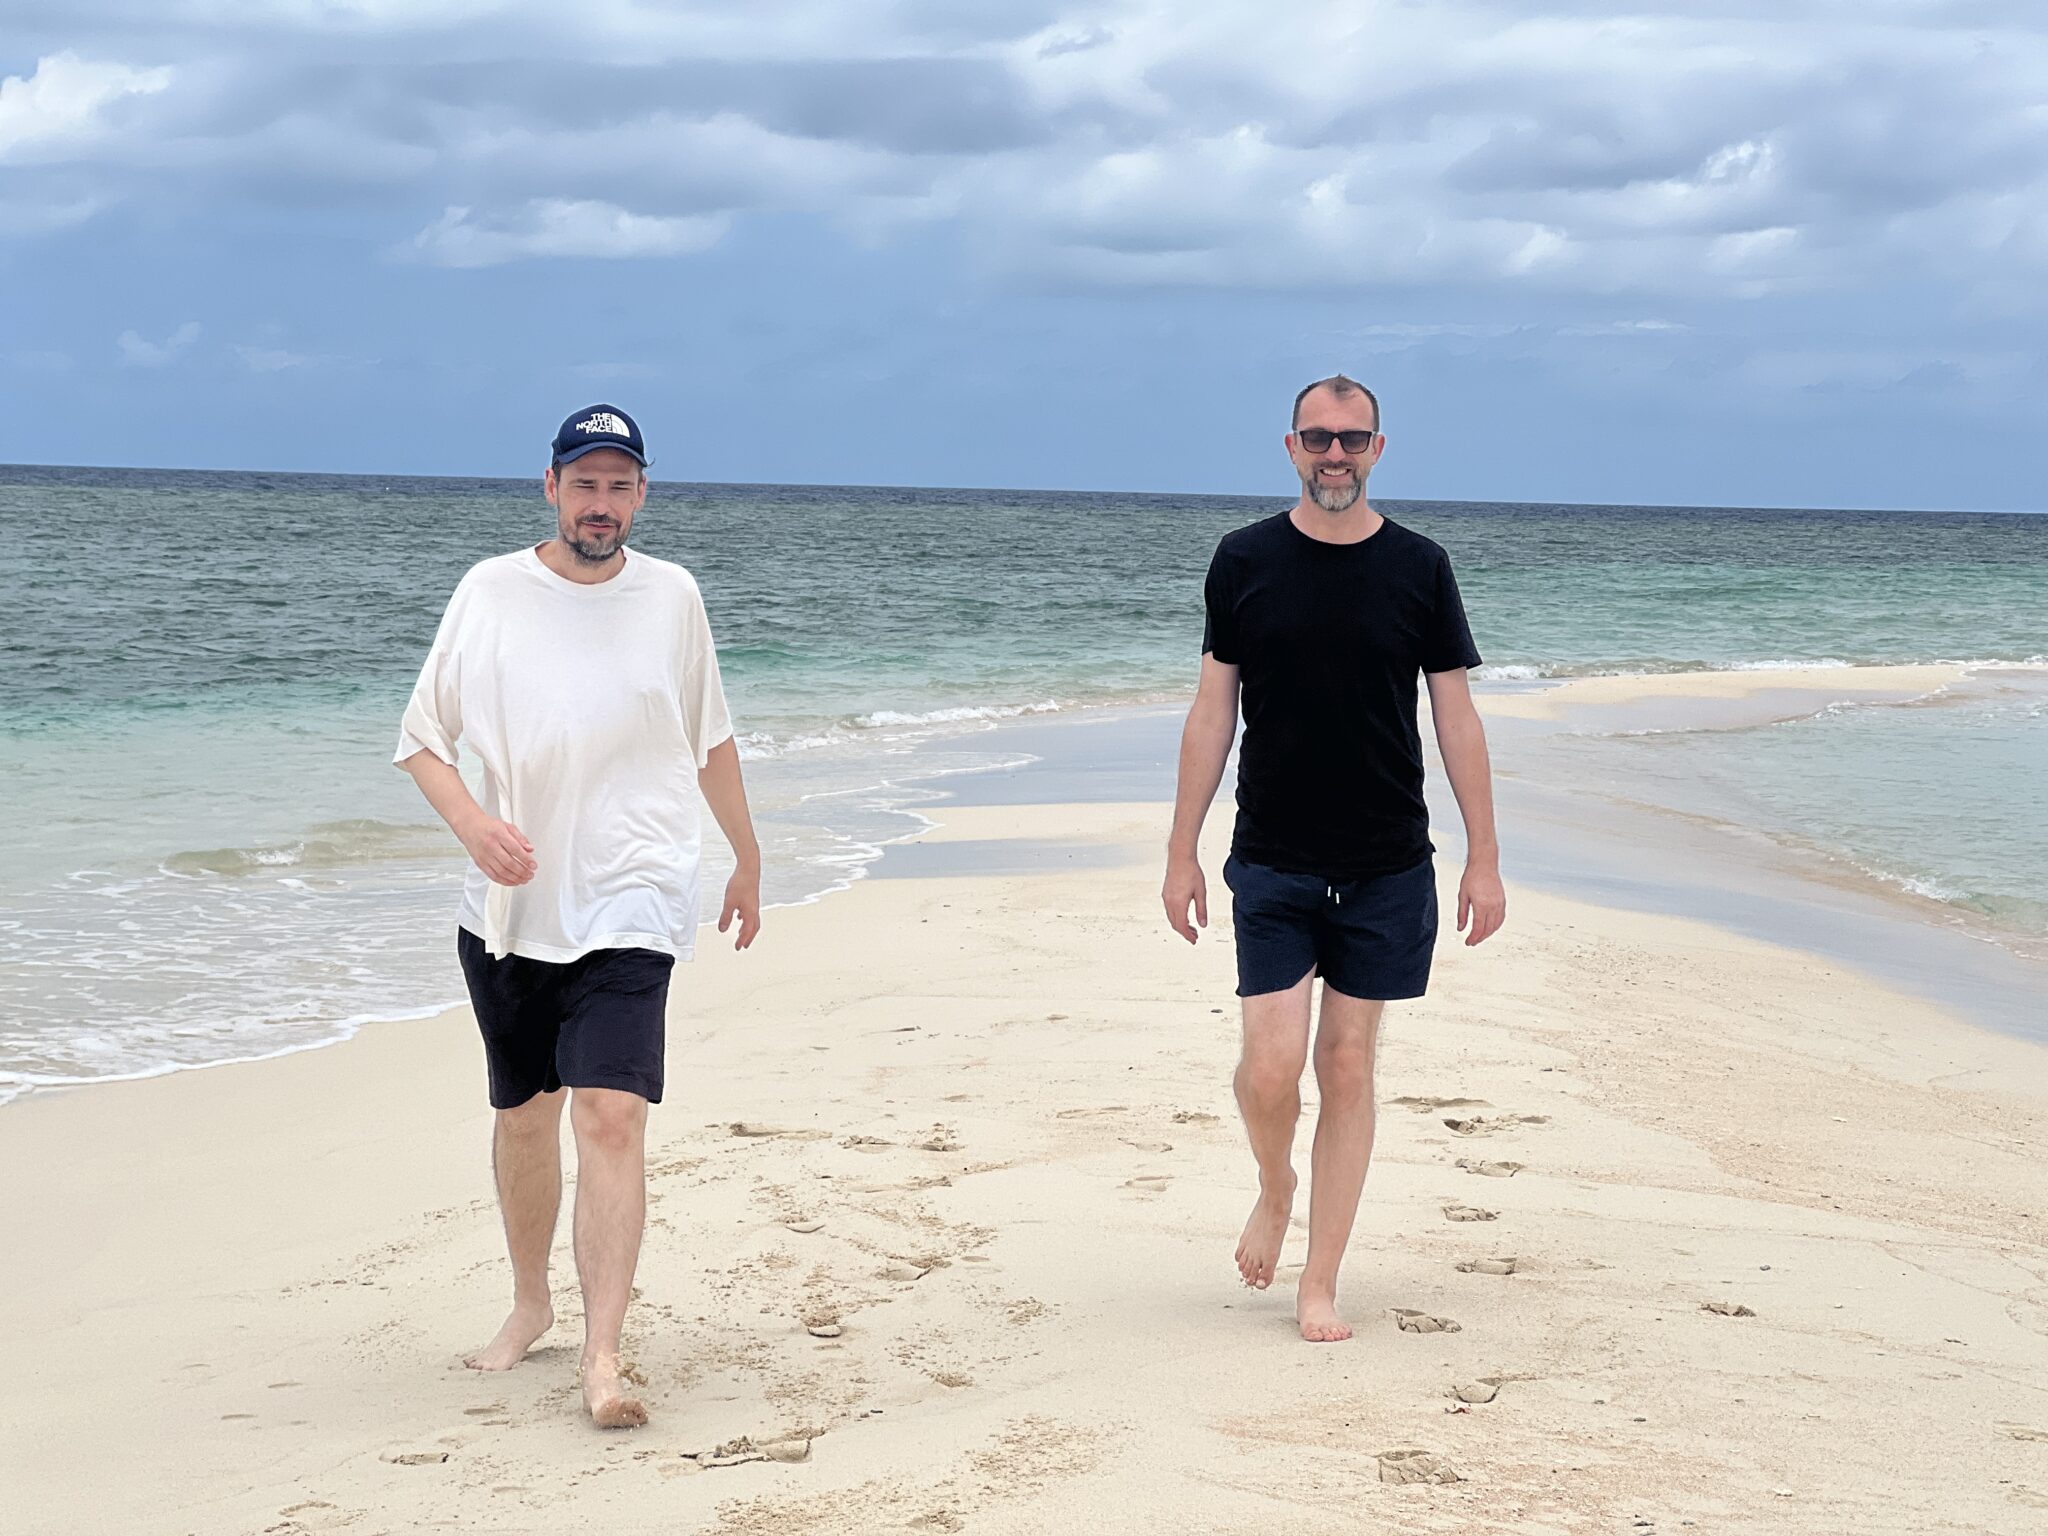 Jochen und Michael laufen am Strand entlang